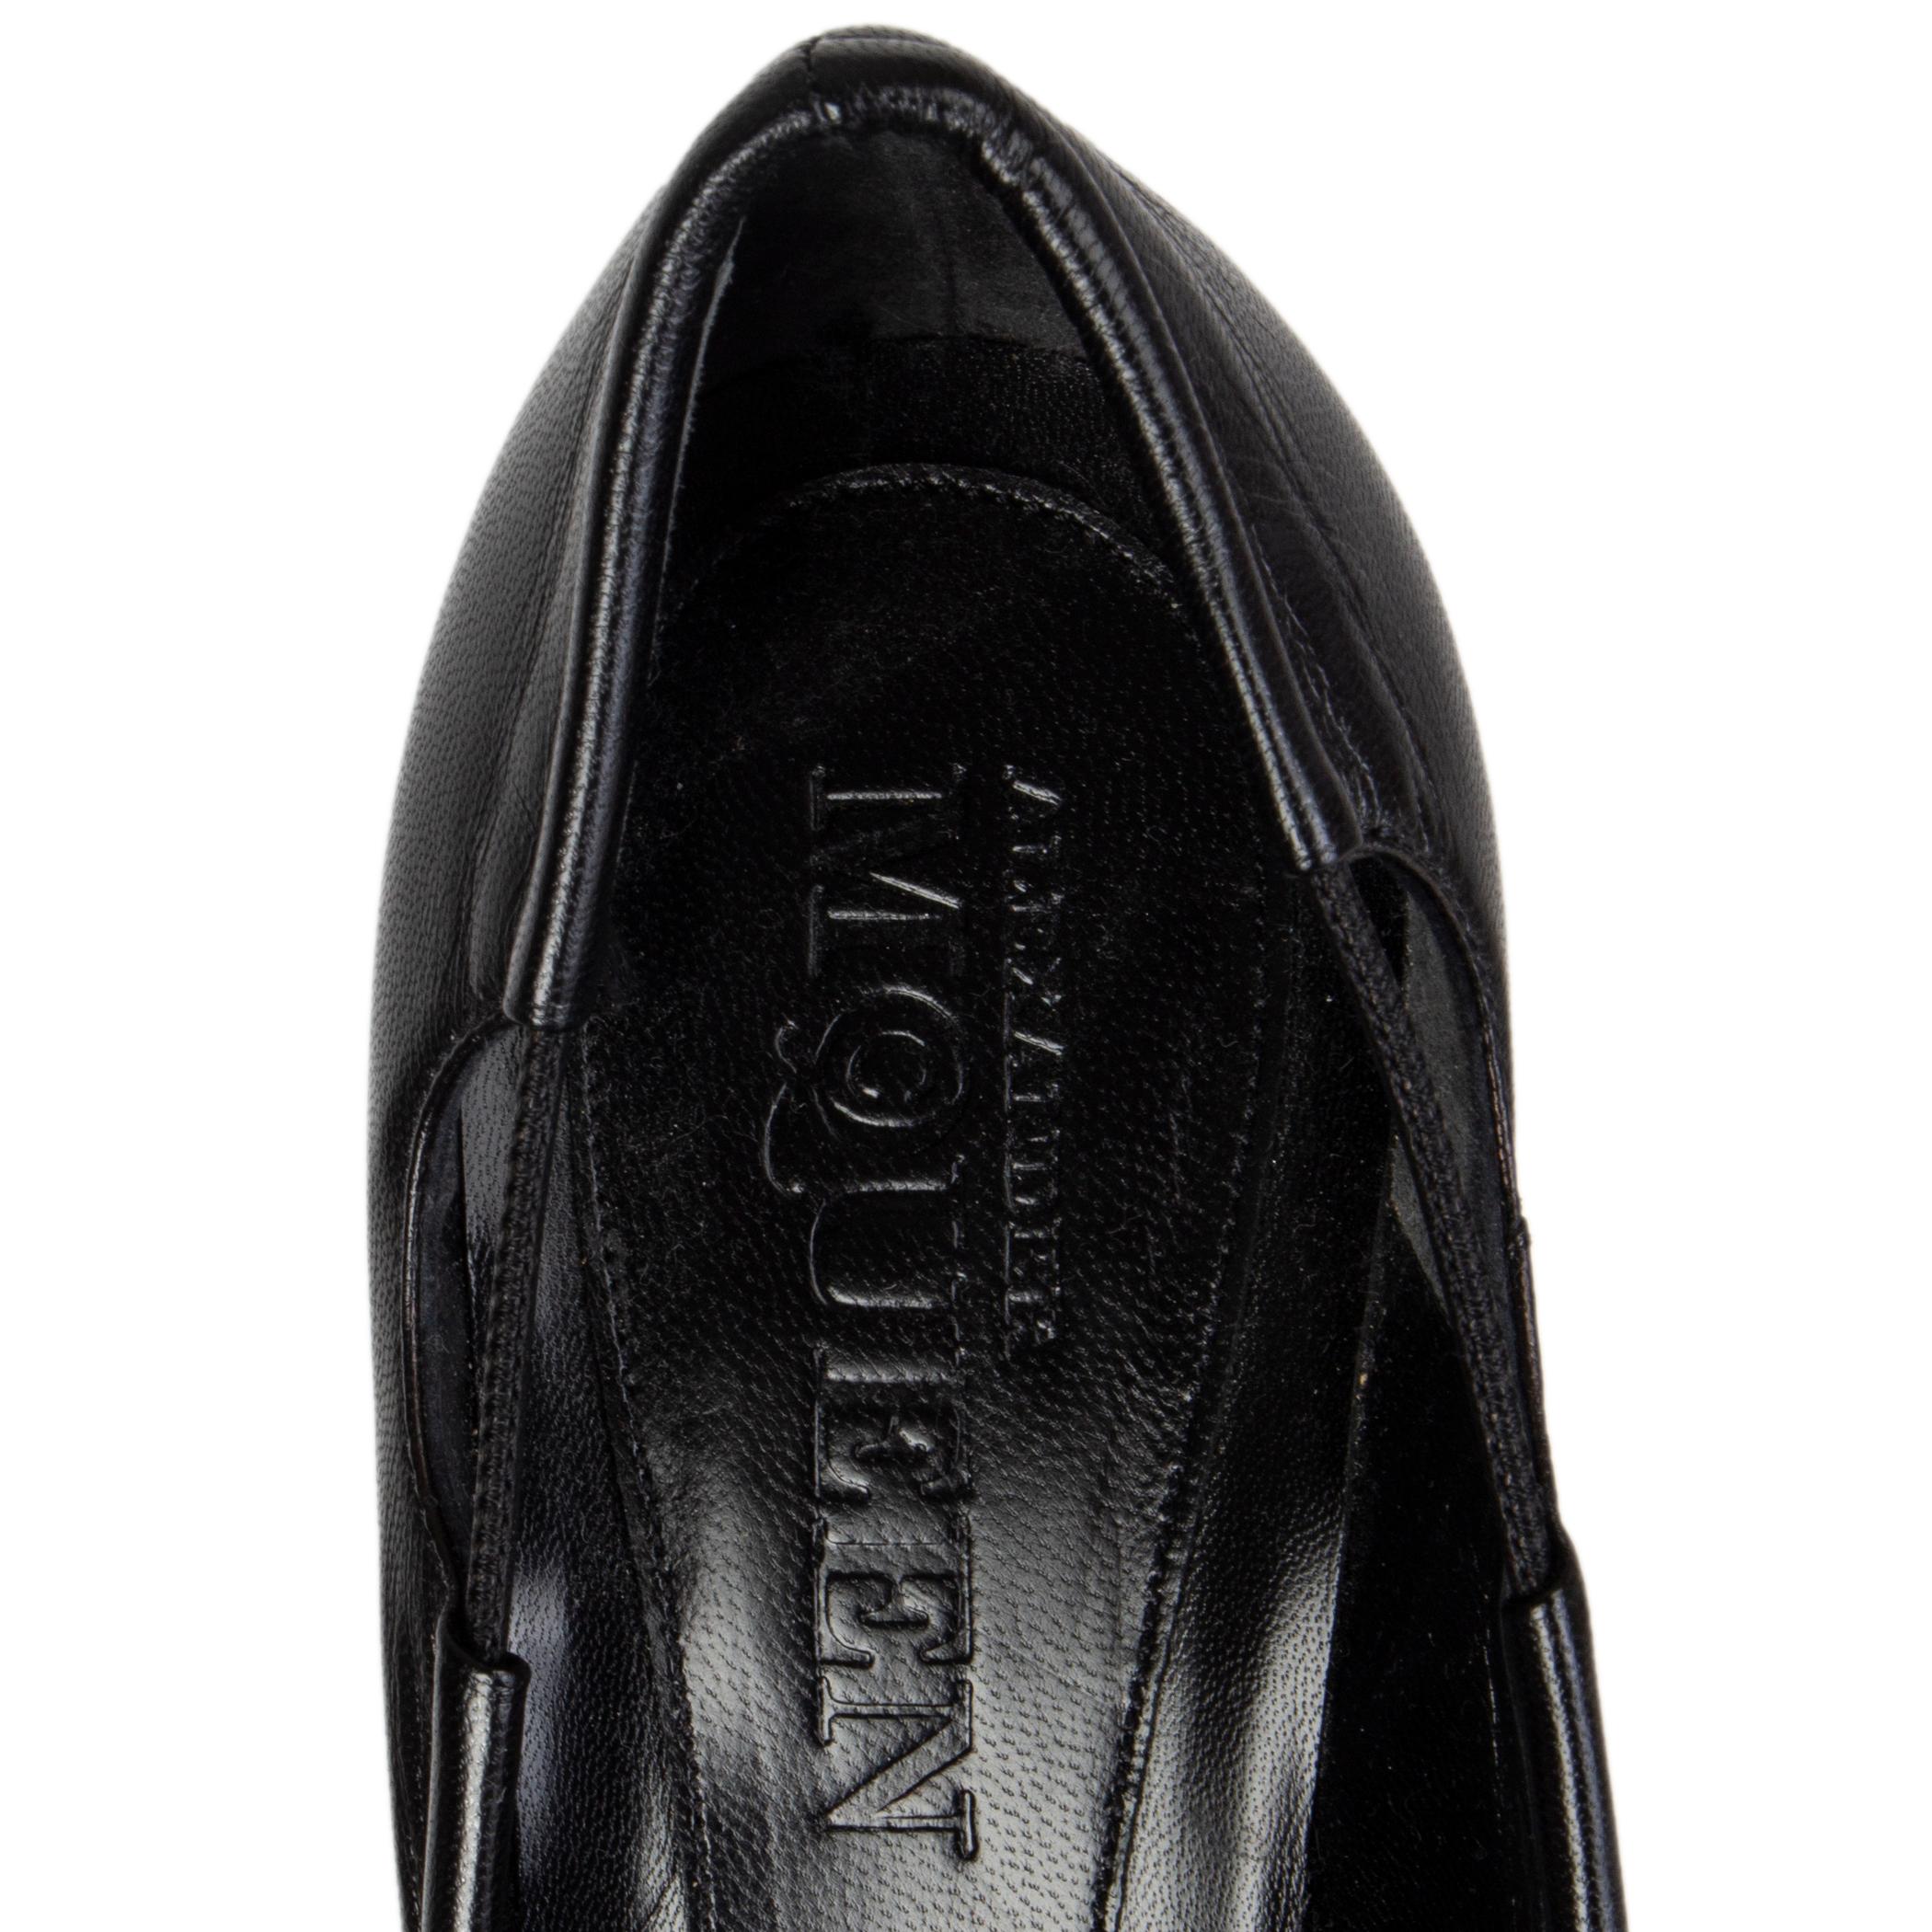 Black ALEXANDER MCQUEEN black leather HAZE Pumps Shoes 39.5